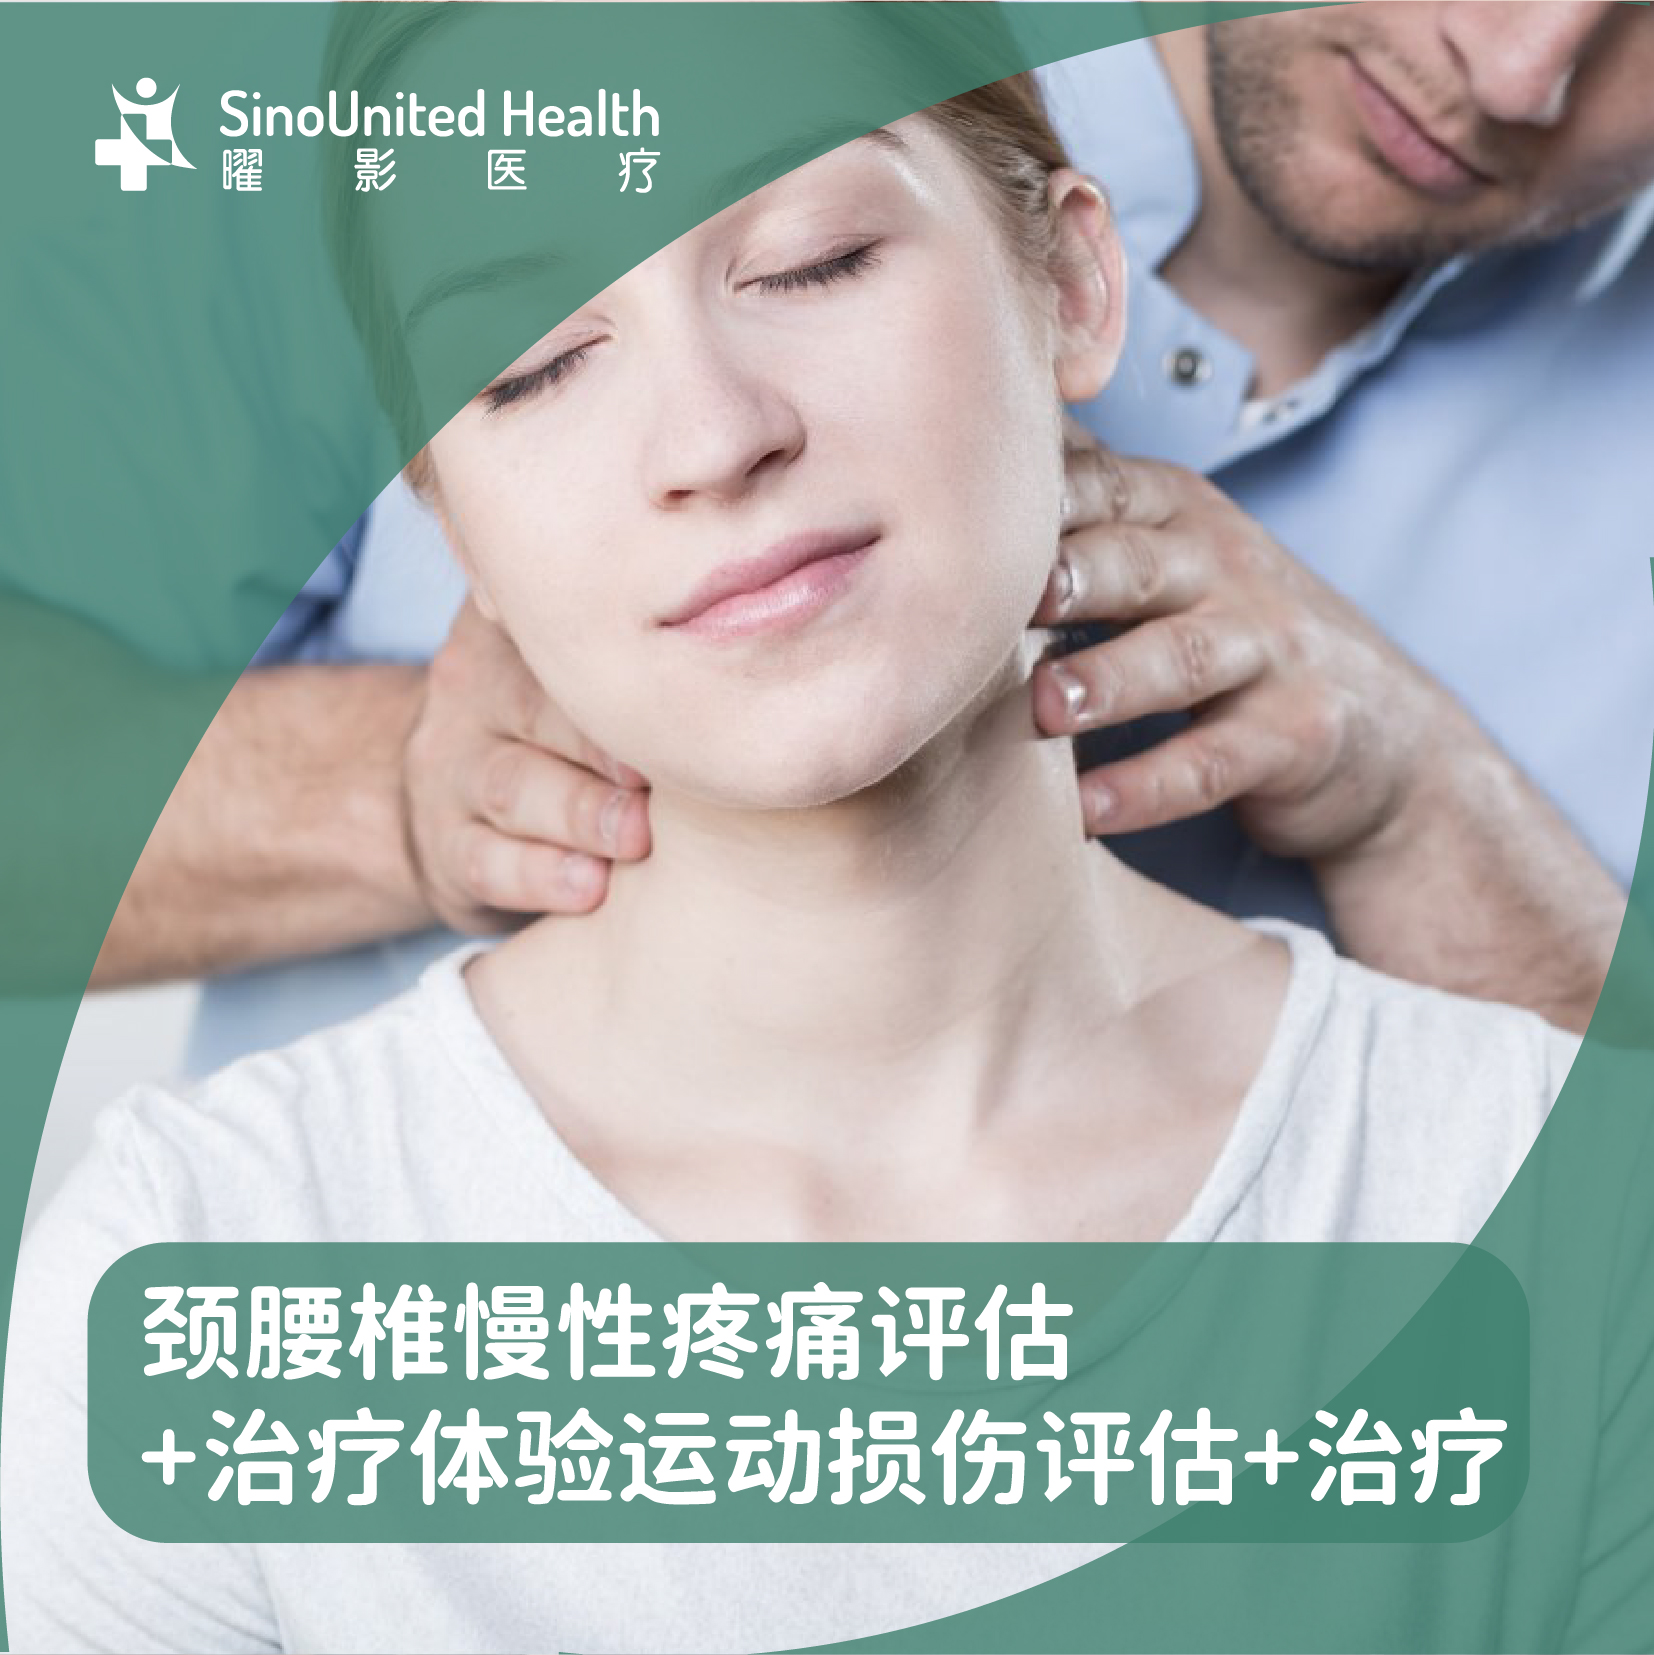 颈腰椎慢性疼痛评估+治疗体验 运动损伤评估+治疗【康复理疗】首次